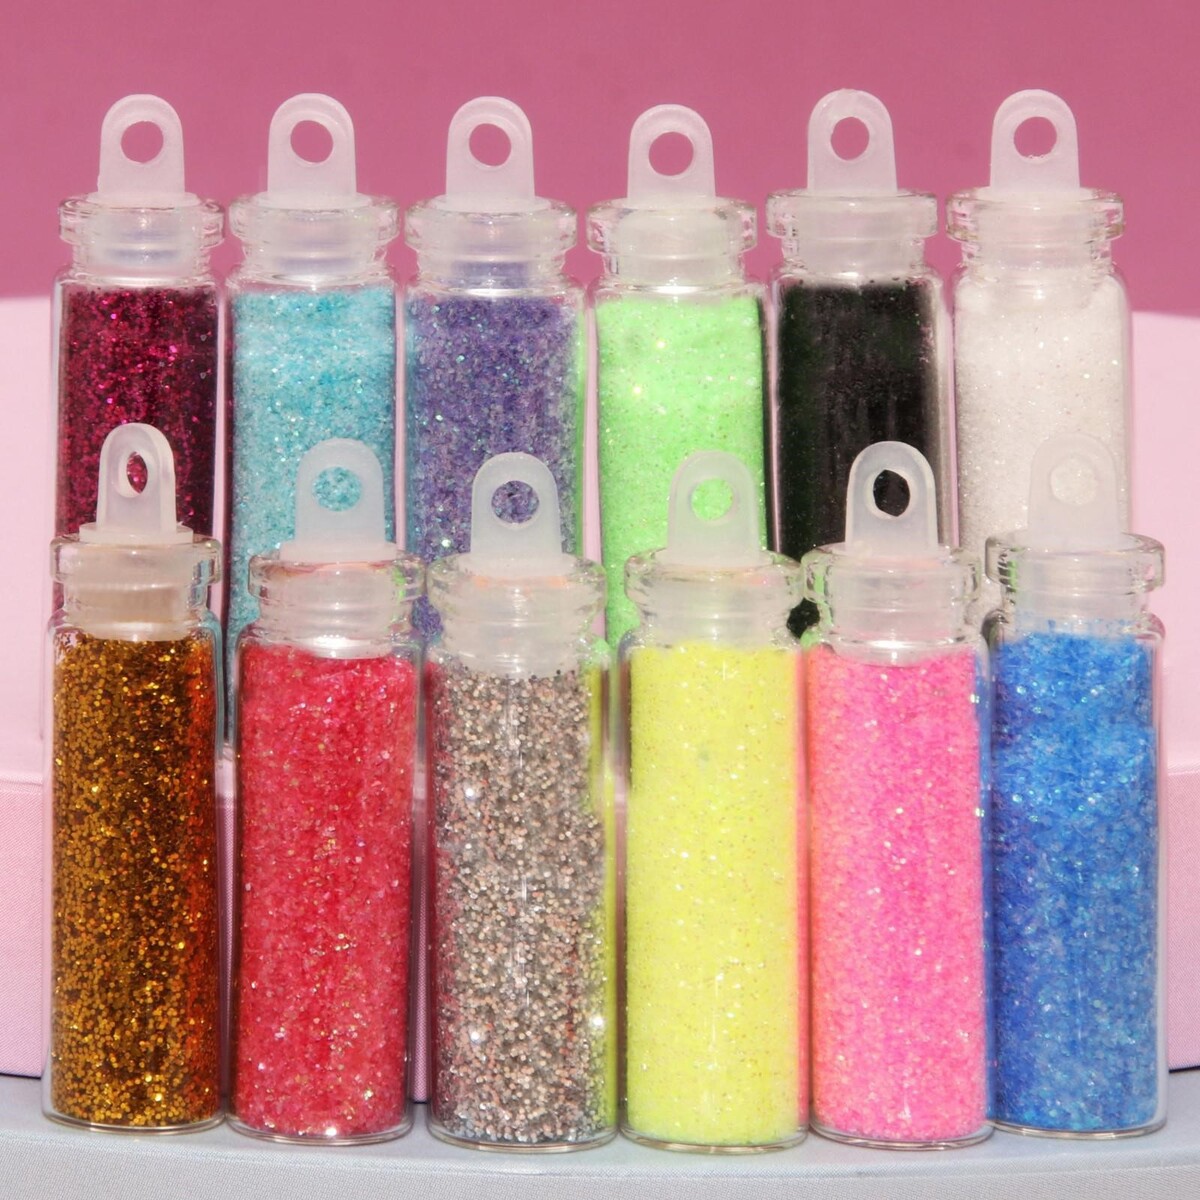 Блестки для декора, мелкие, набор 12 бутылочек, разноцветные мелкие кристаллы для декора ногтей